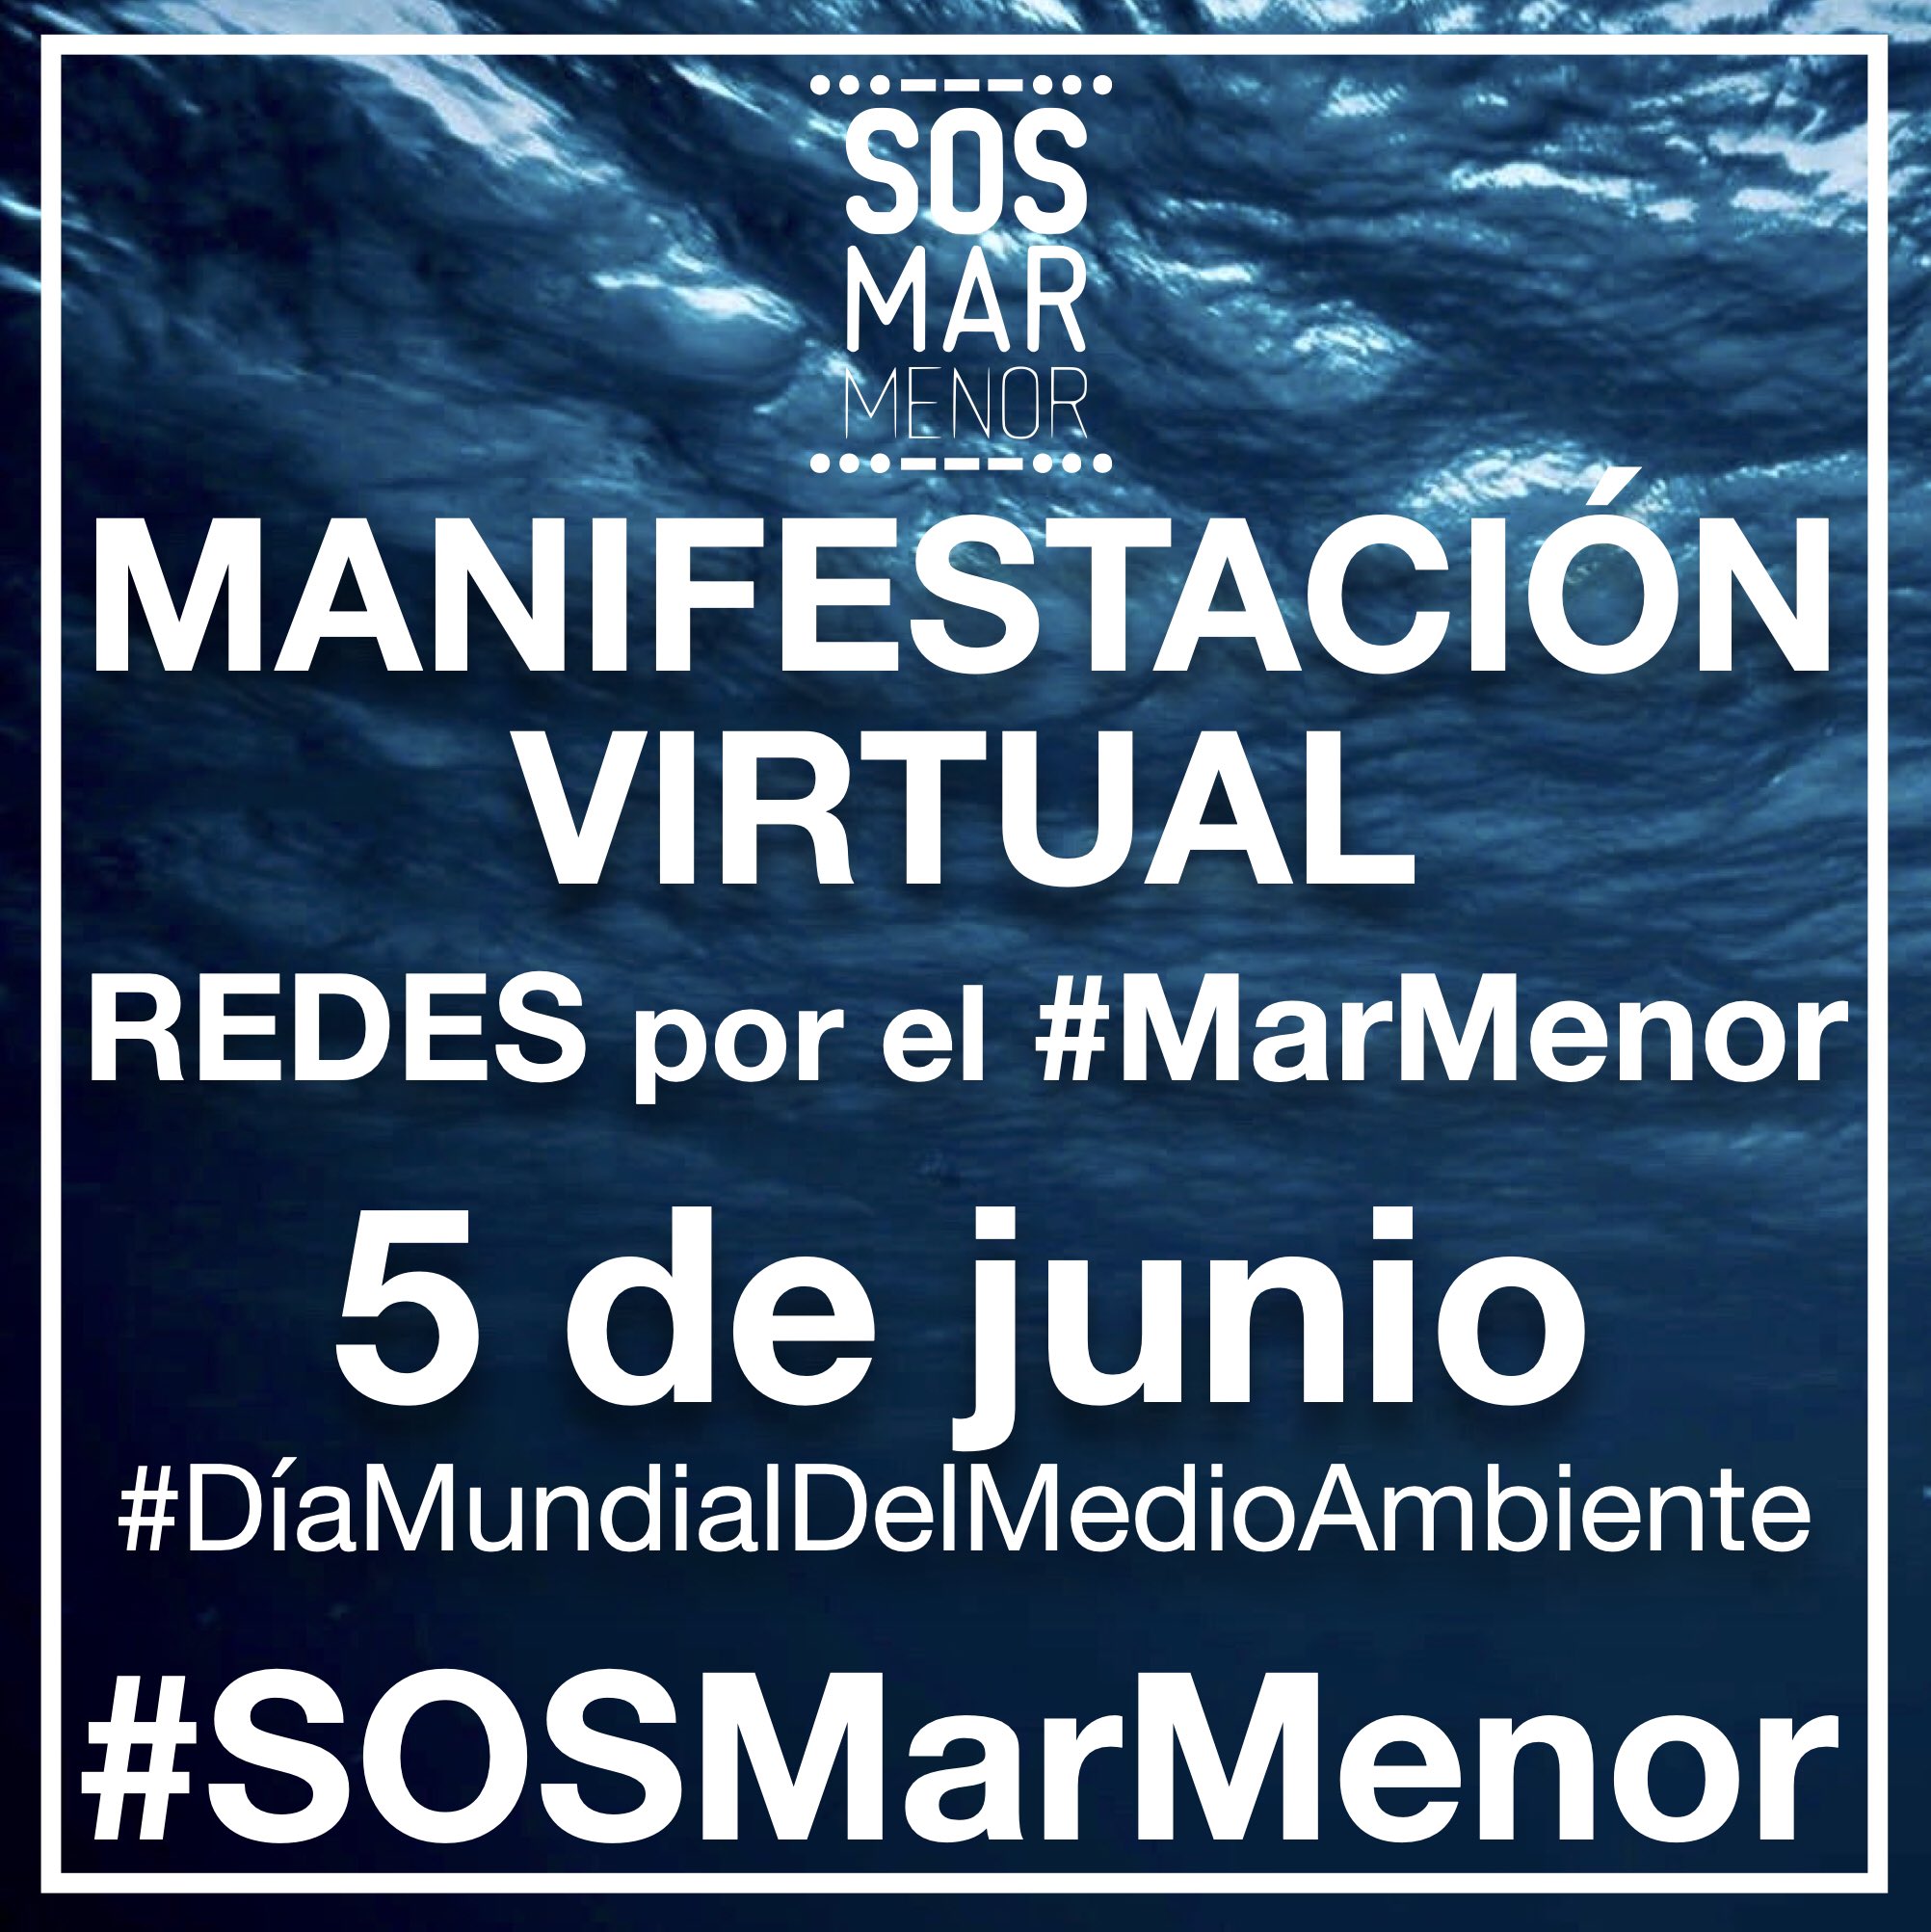 Cartel redes Manifestación Virtual 5junio2020 #SOSMarMenor